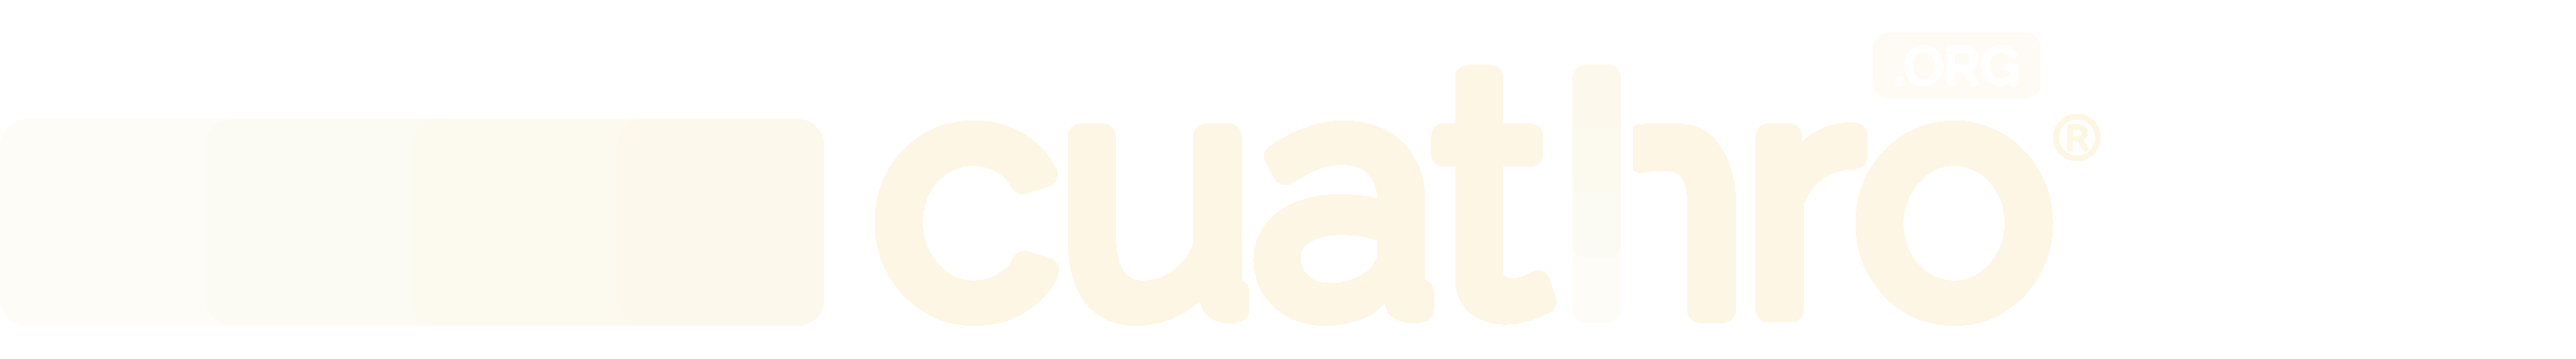 Cuathro® icon